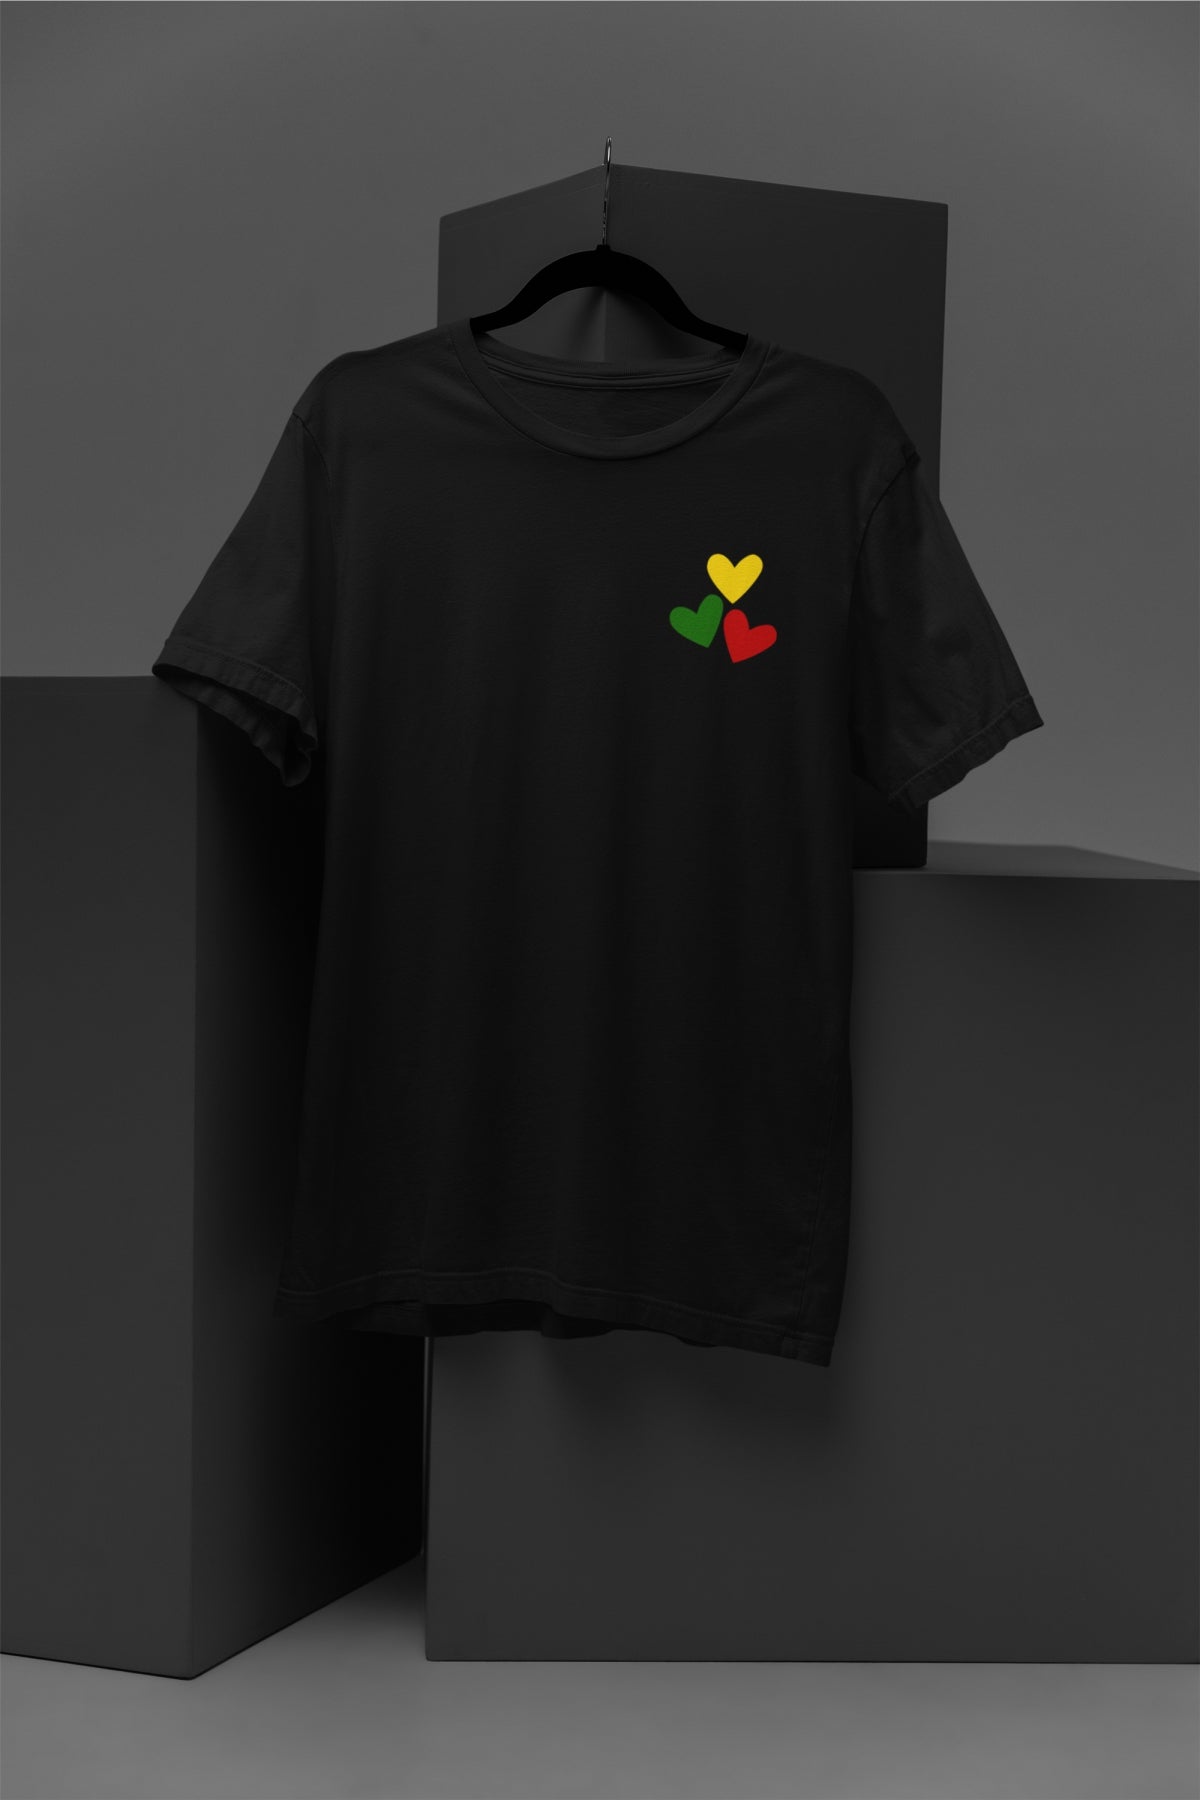 Juodi UNISEX marškinėliai "Trys lietuviškos širdelės" PASKUTINIAI VIENETAI (BC e190)